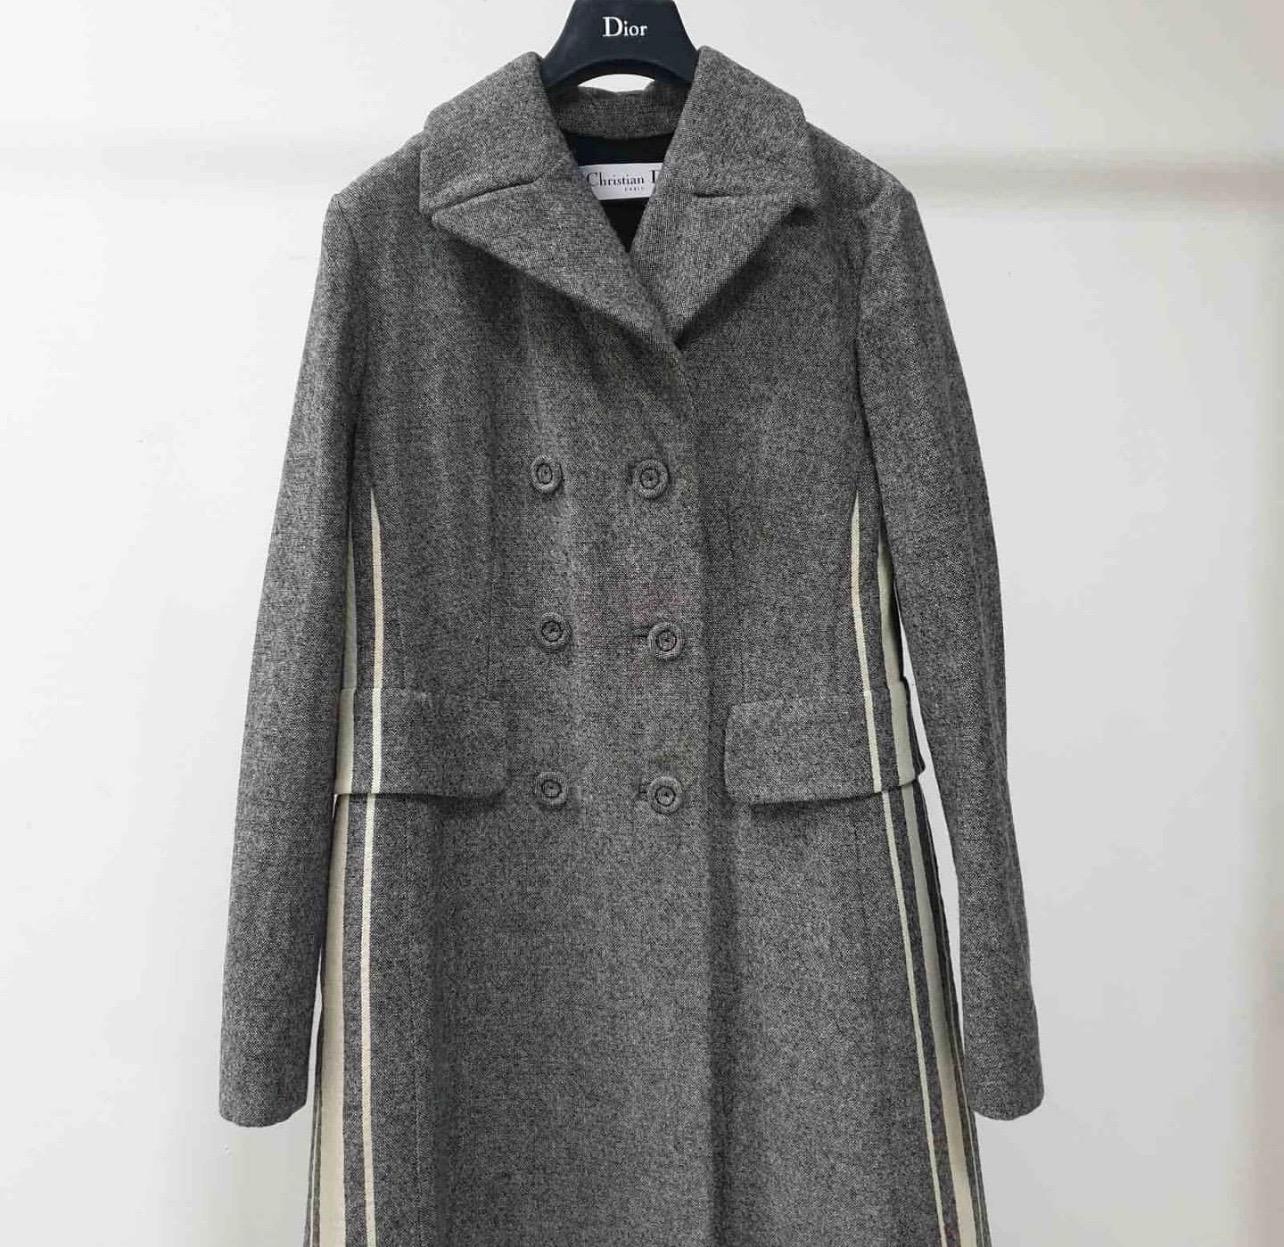 dior grey coat